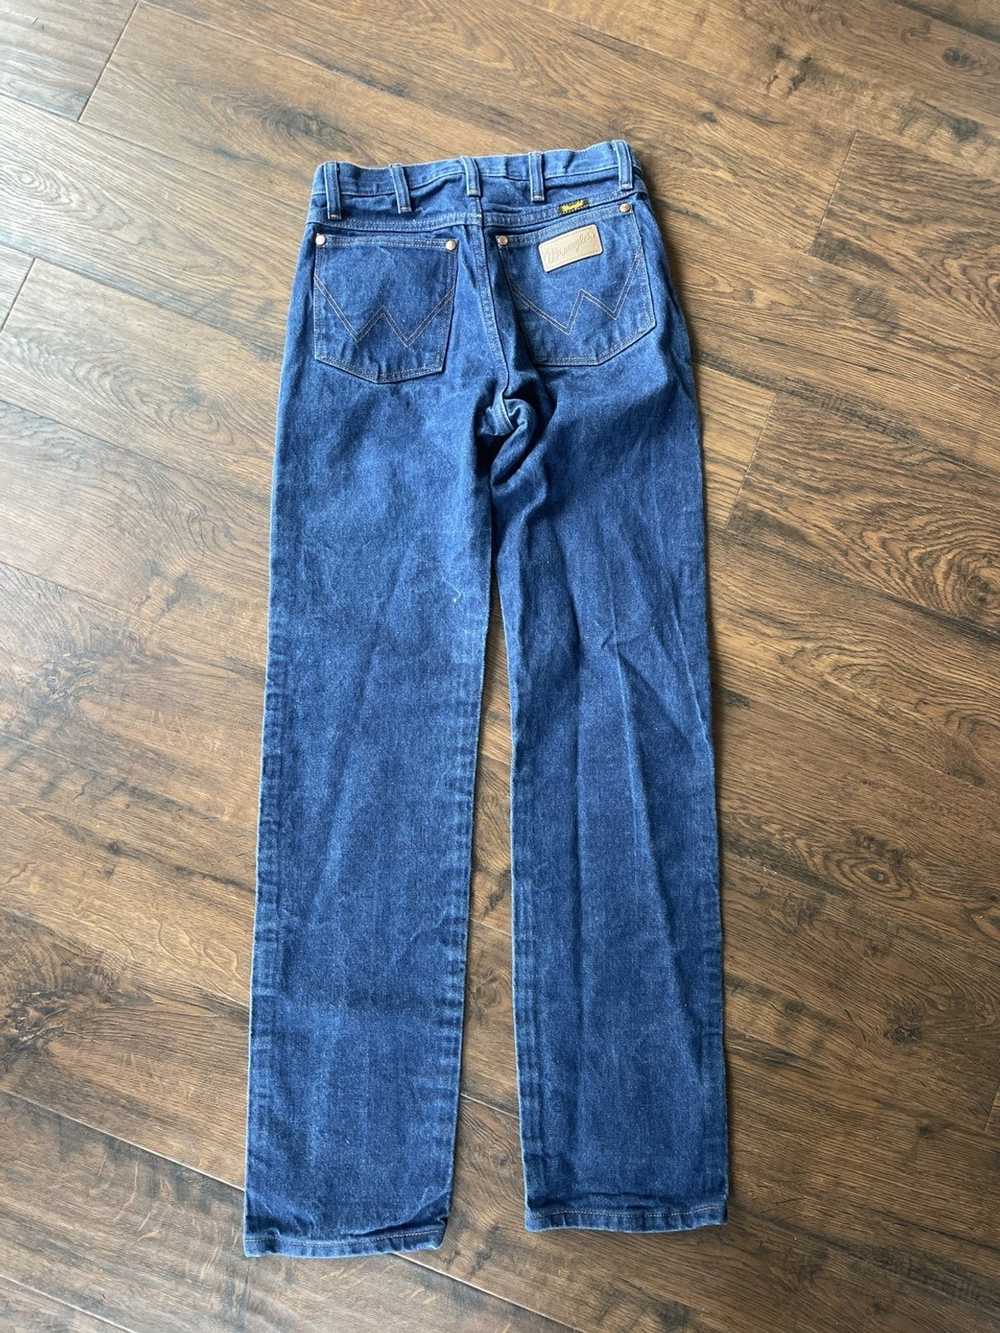 Wrangler wrangler jeans - image 6